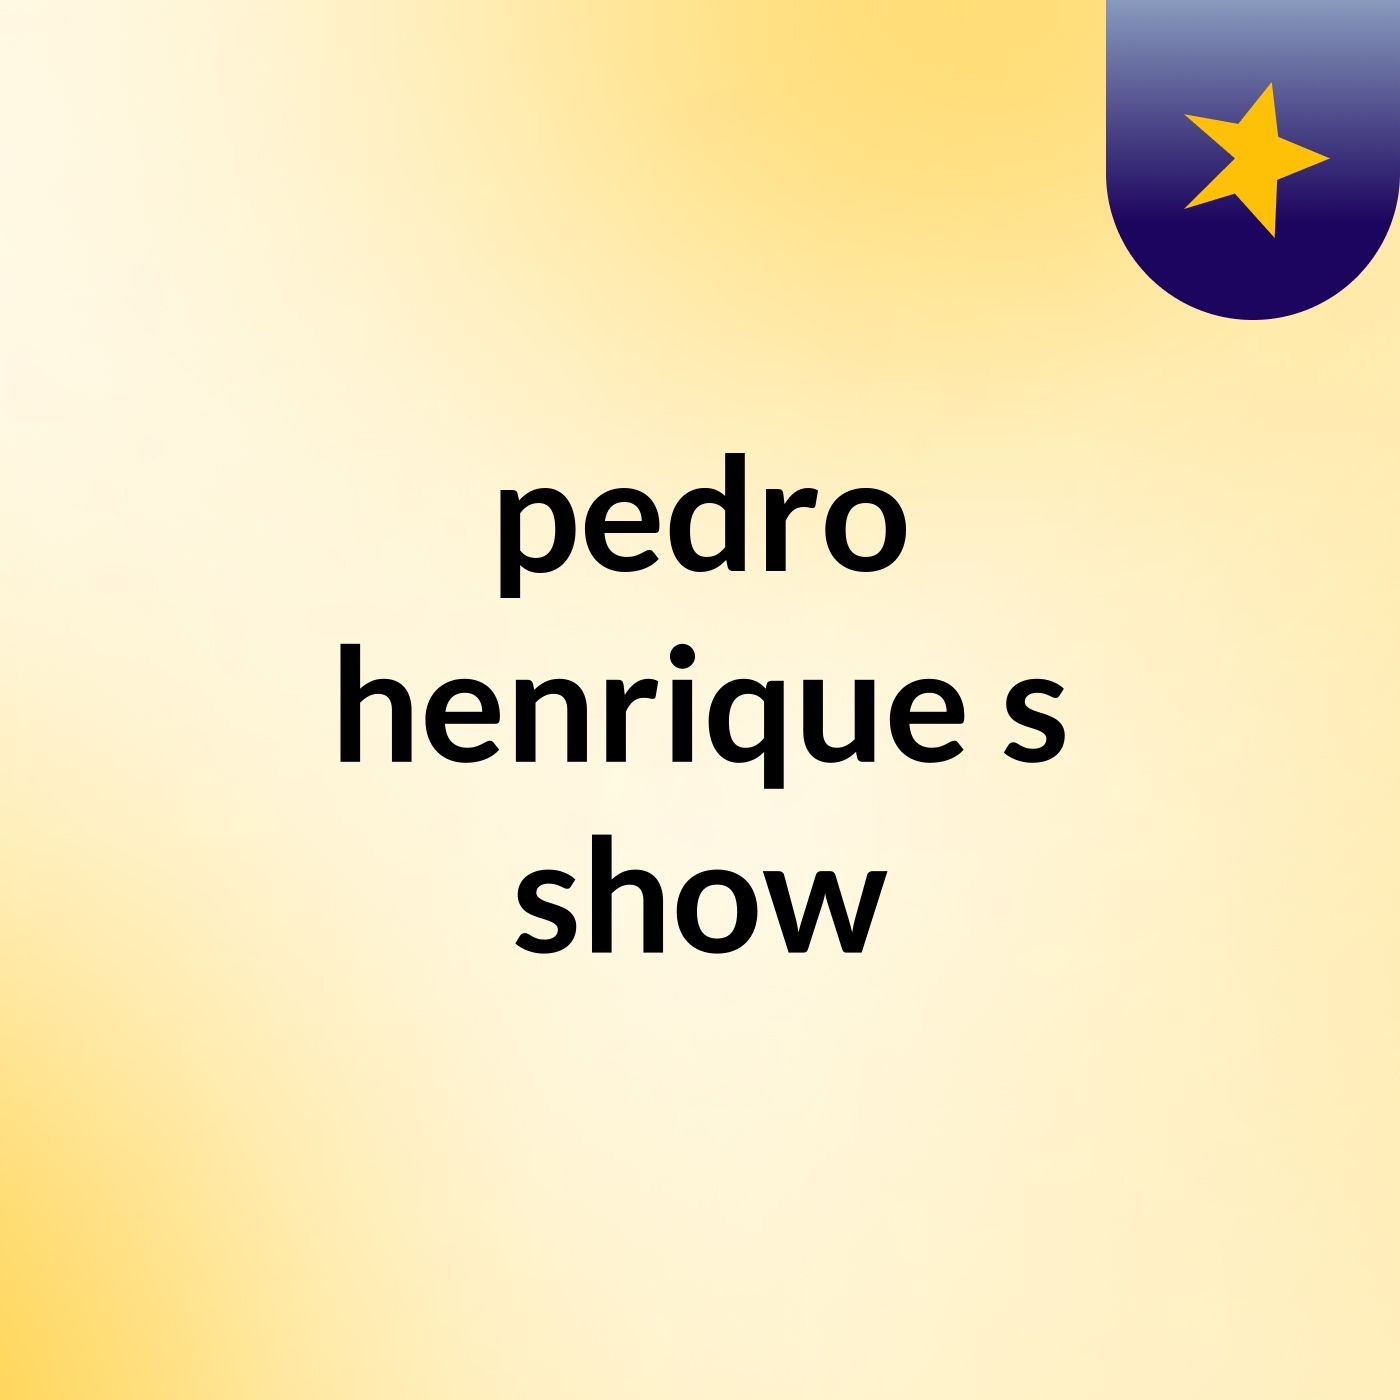 pedro henrique's show